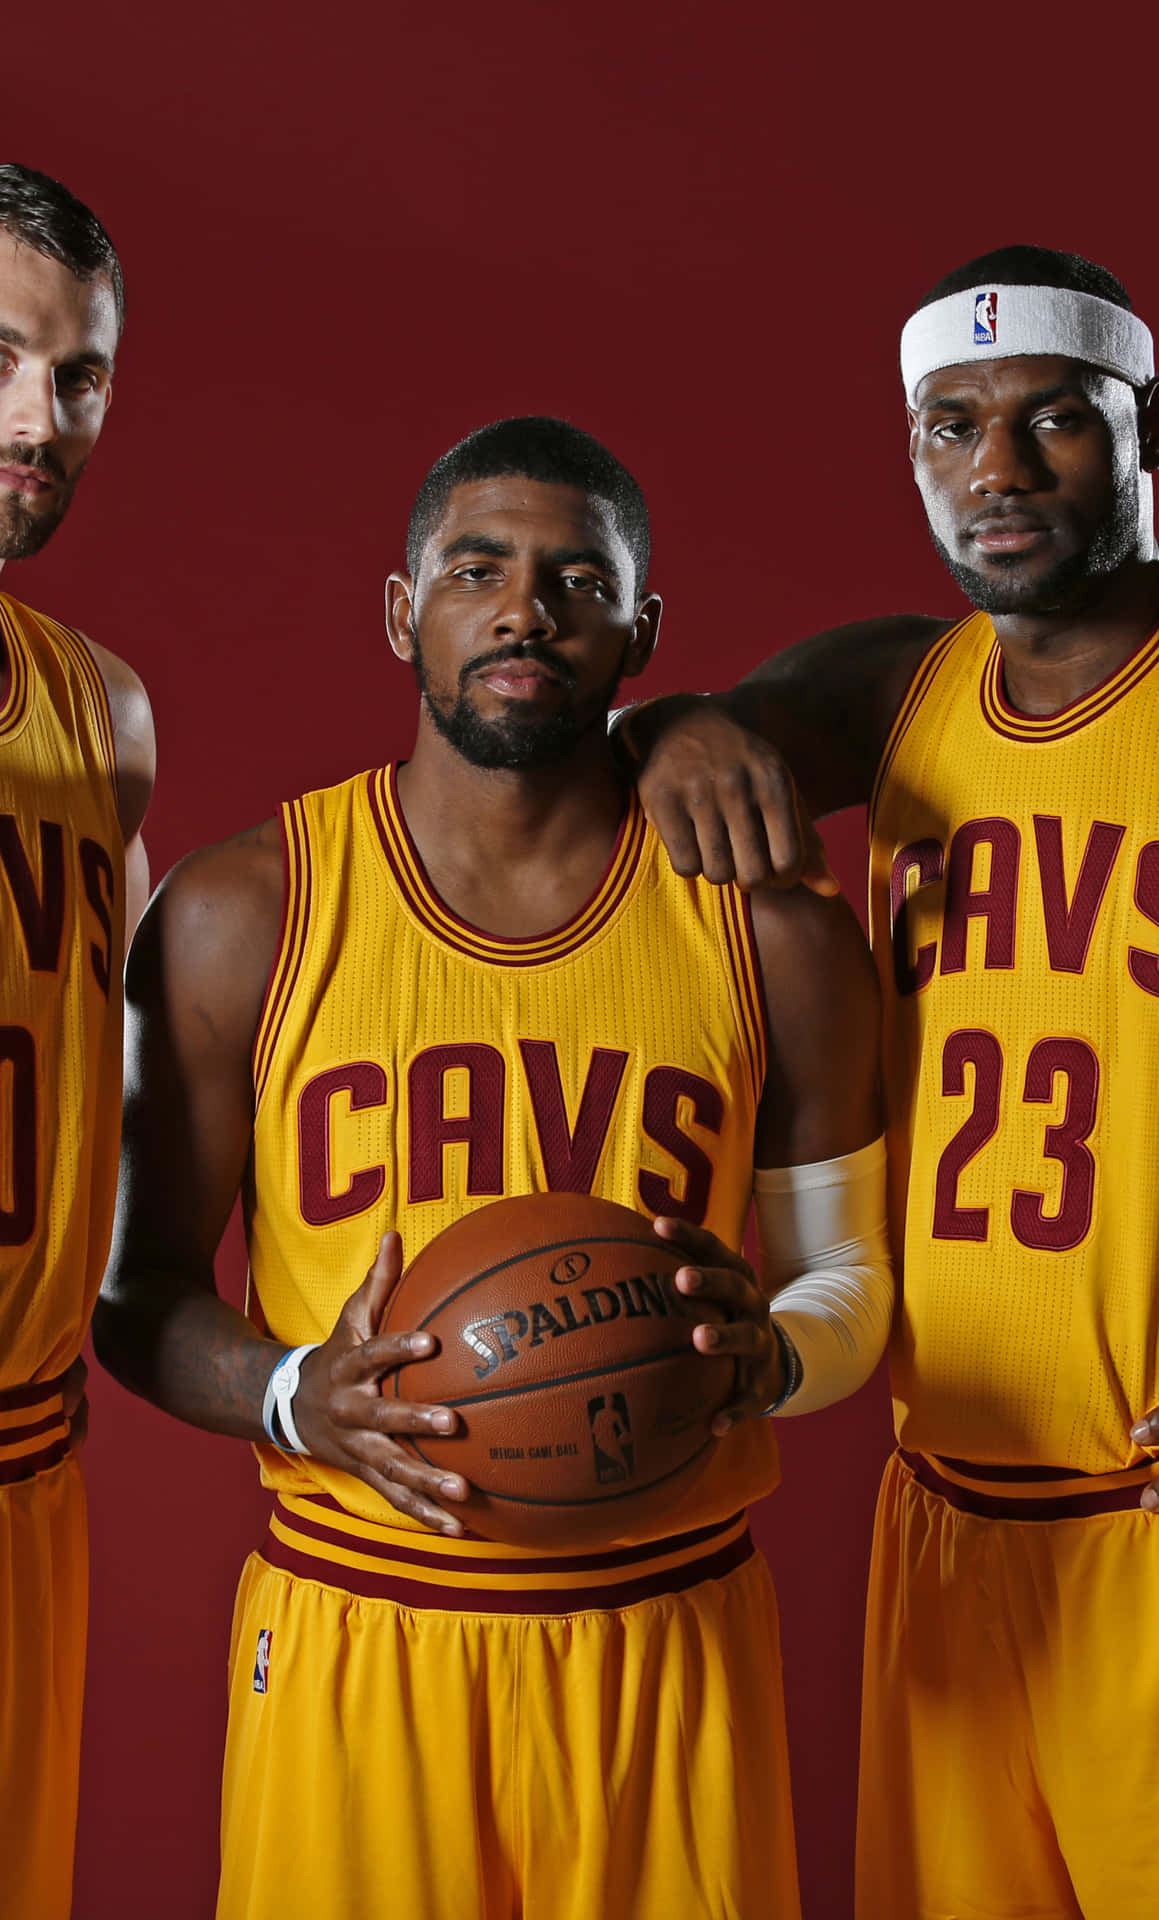 ClevelandCavaliers - NBA - NBA - NBA - NBA: Cleveland Cavaliers - NBA - NBA - NBA - NBA Wallpaper